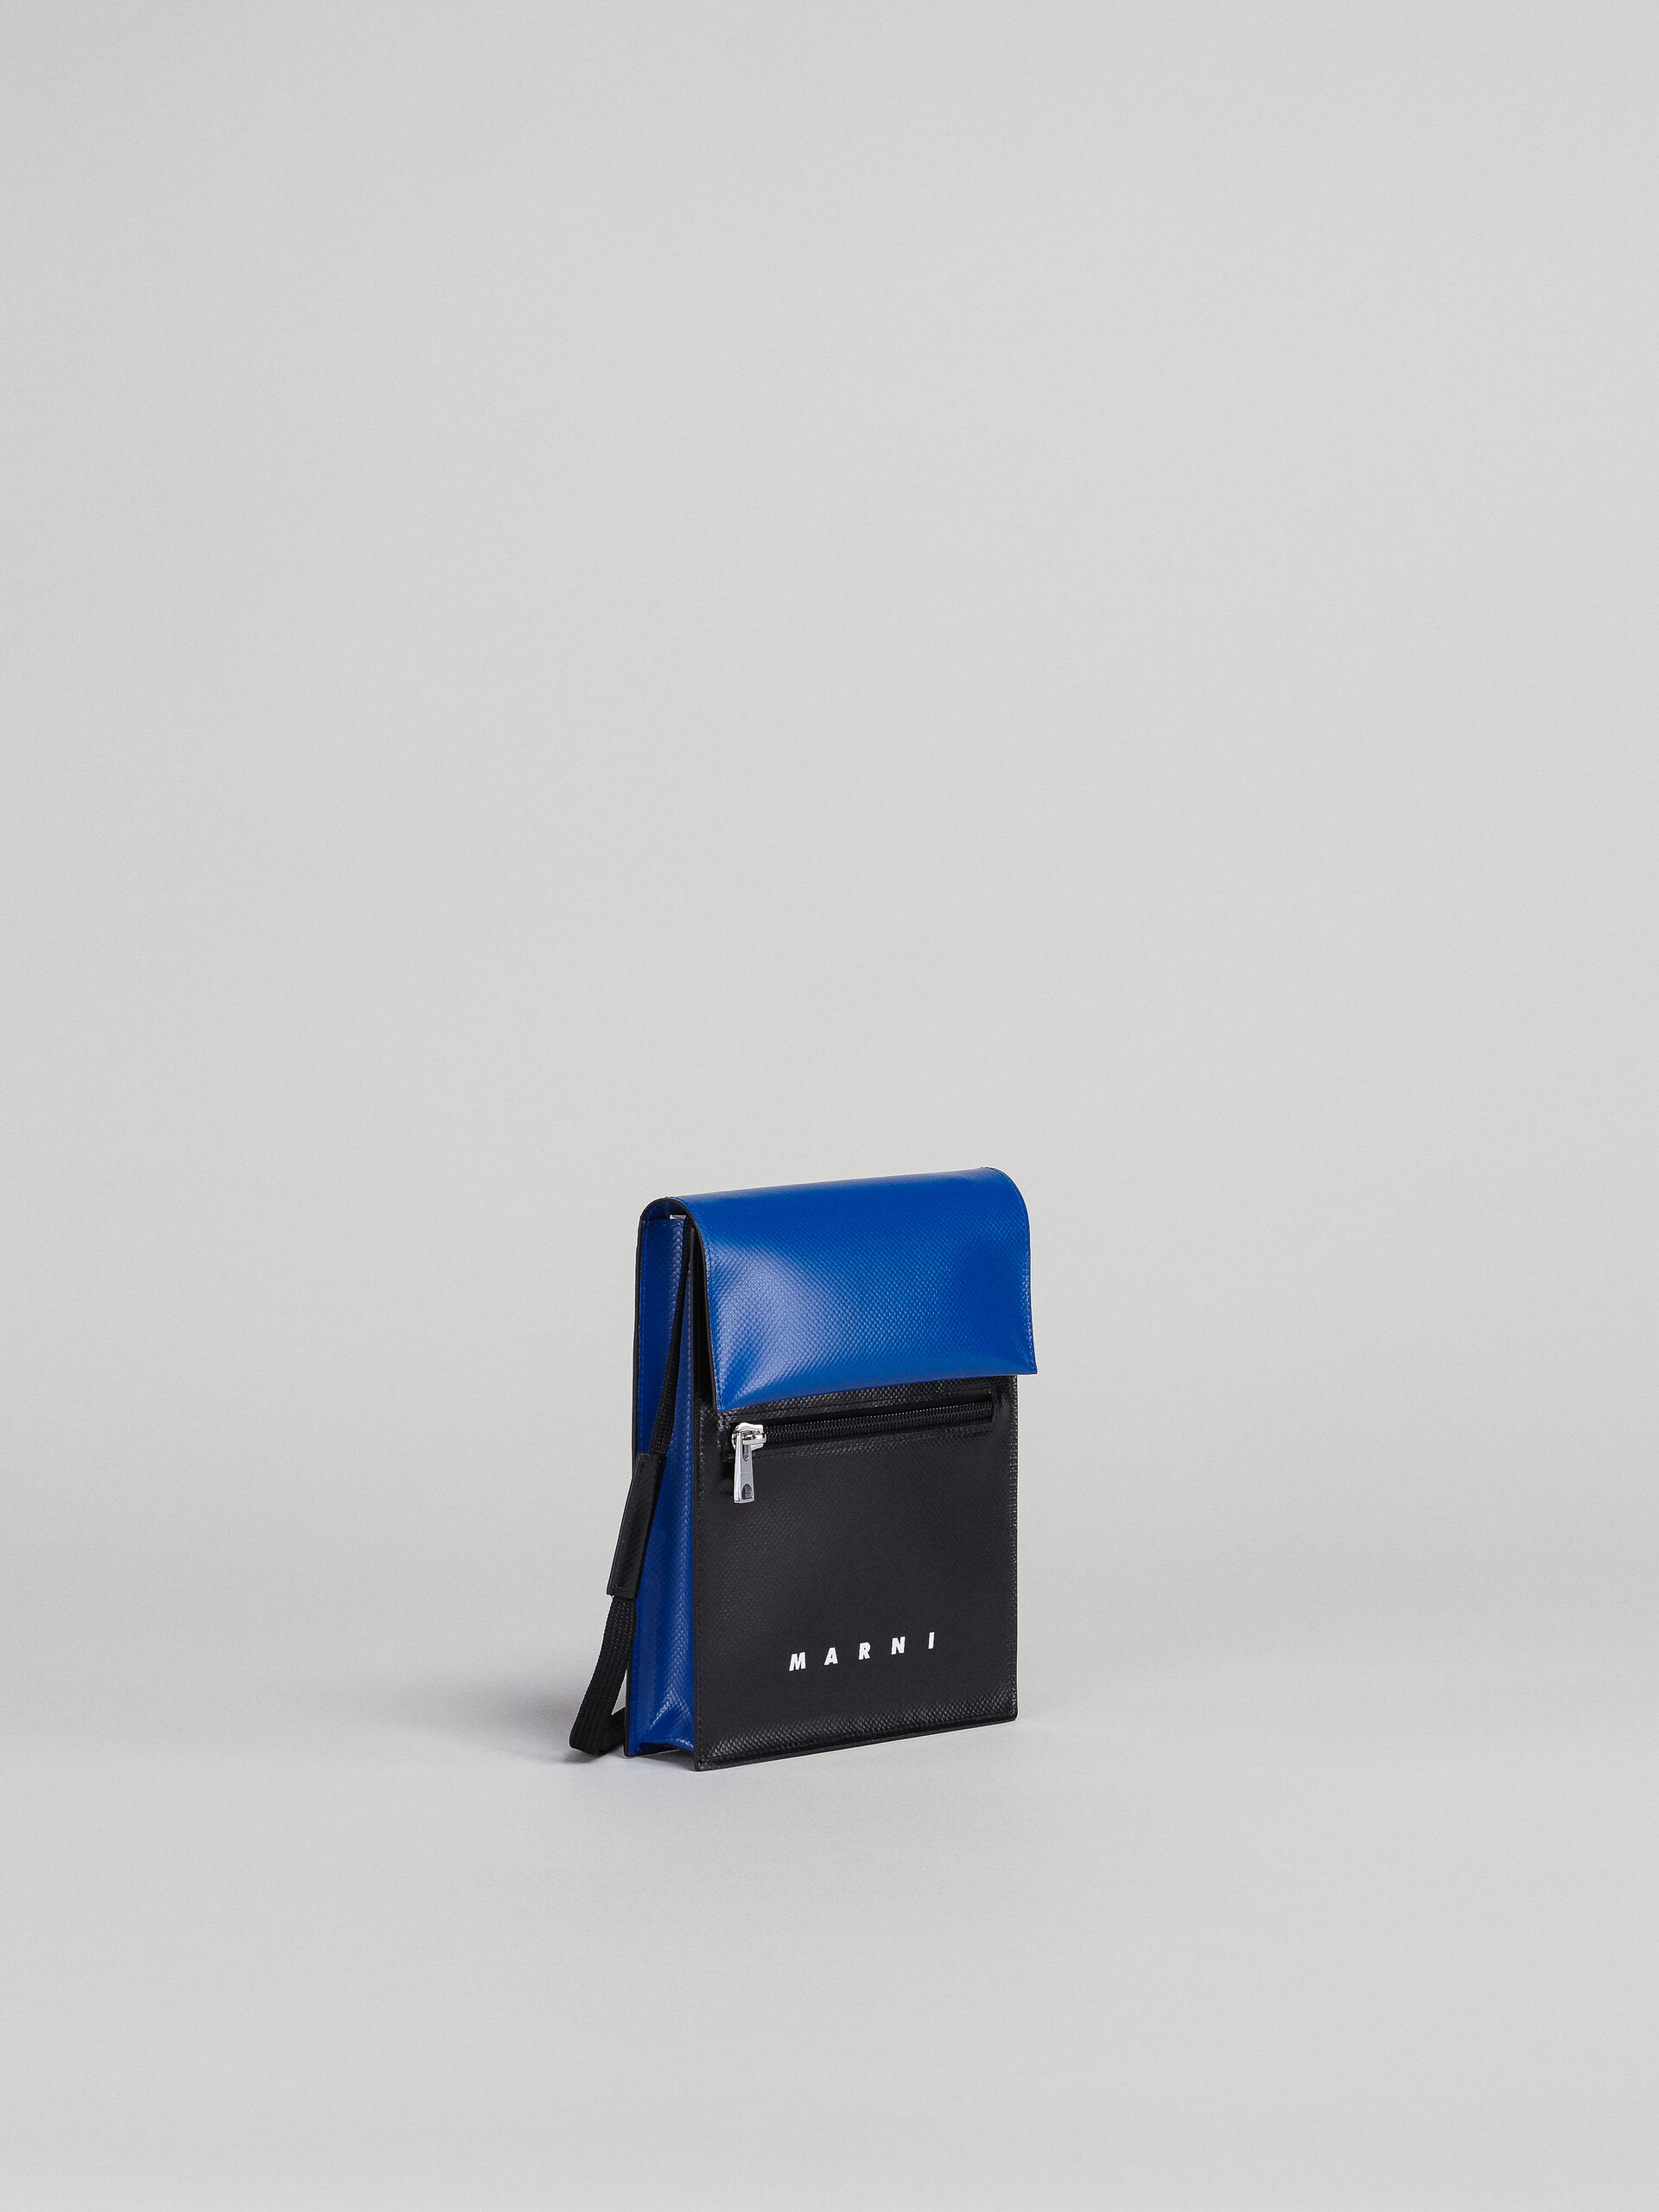 Tribeca shoulder bag in blue and black - Shoulder Bags - Image 6